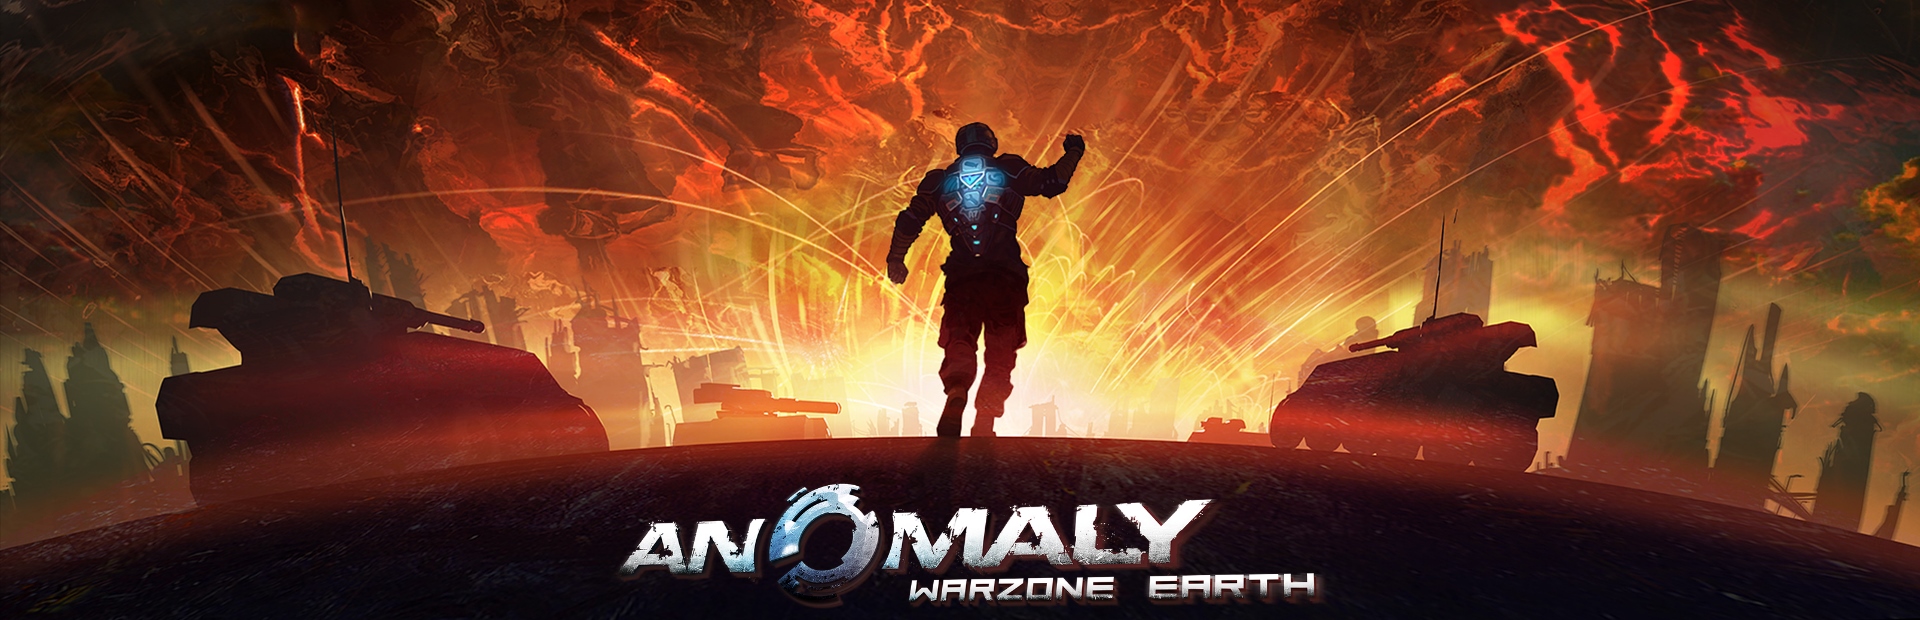 دانلود بازی Anomaly: Warzone Earth برای کامپیوتر | گیمباتو